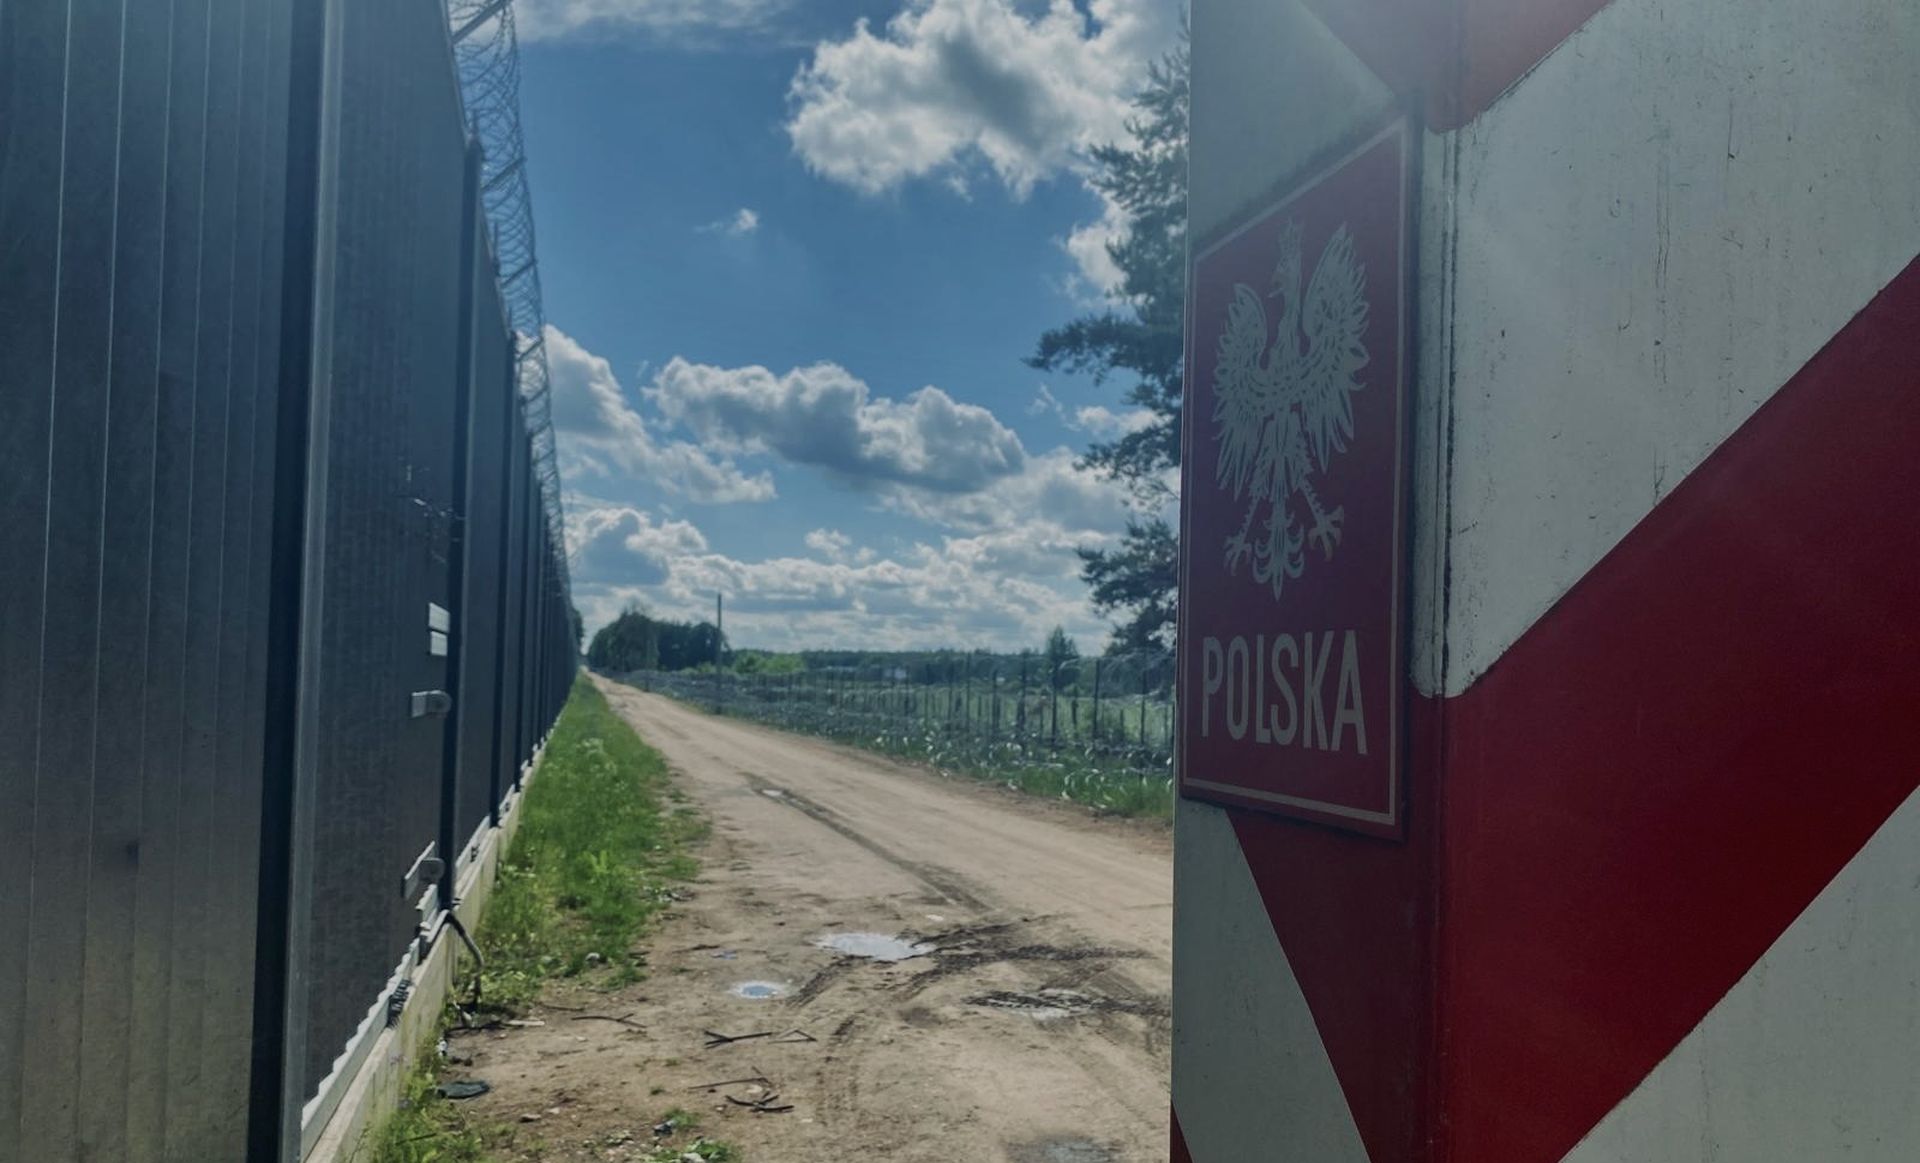 Blisko 430 prób nielegalnego przekroczenia granicy polsko-białoruskiej odnotowała Straż Graniczna w ciągu minionych trzech dni.